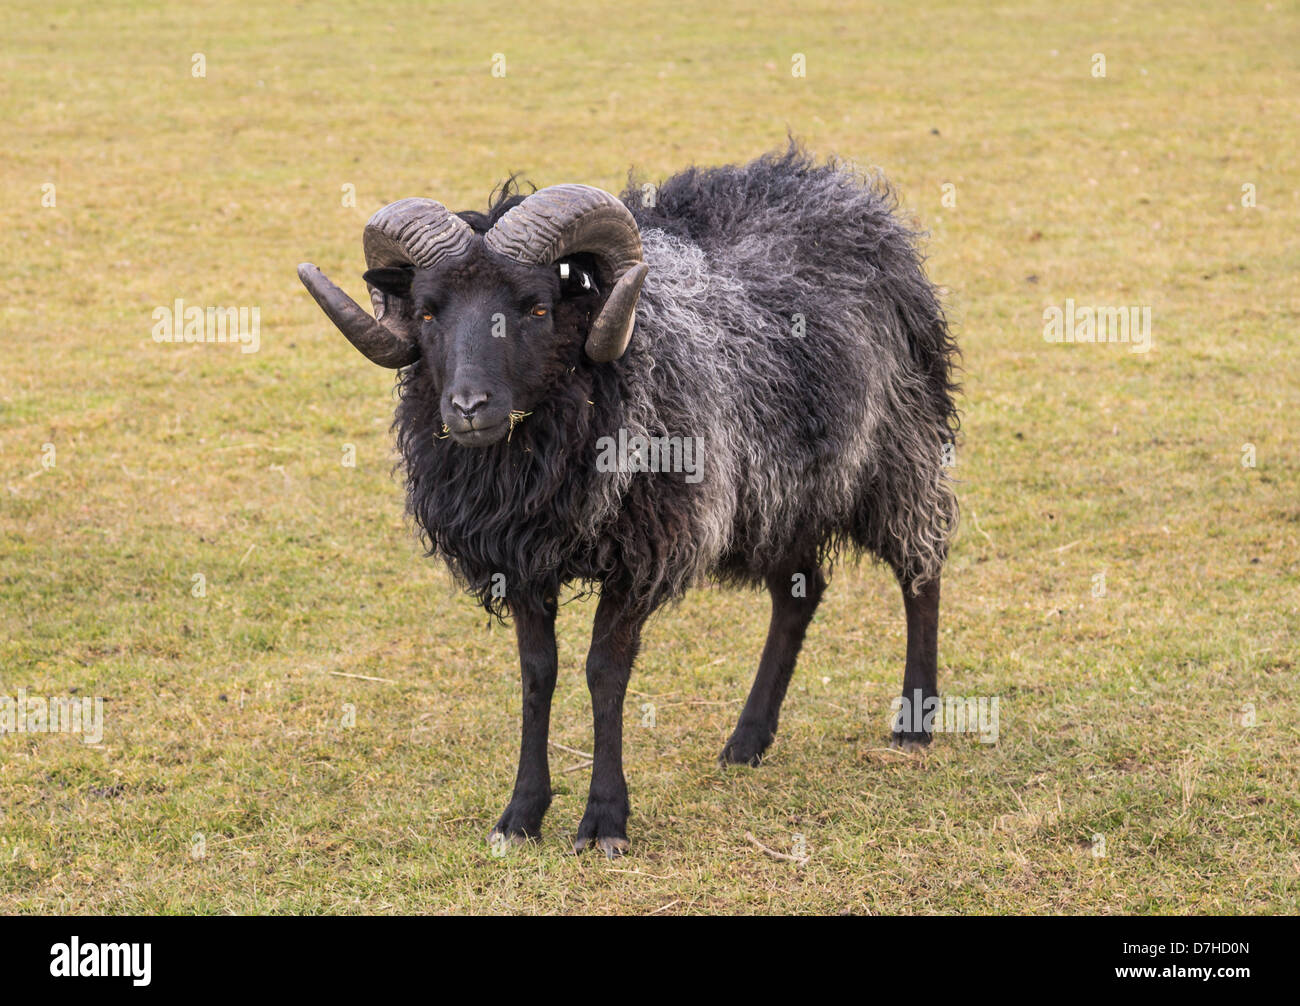 Hebridean sheep. Photograph shows a ram. Stock Photo